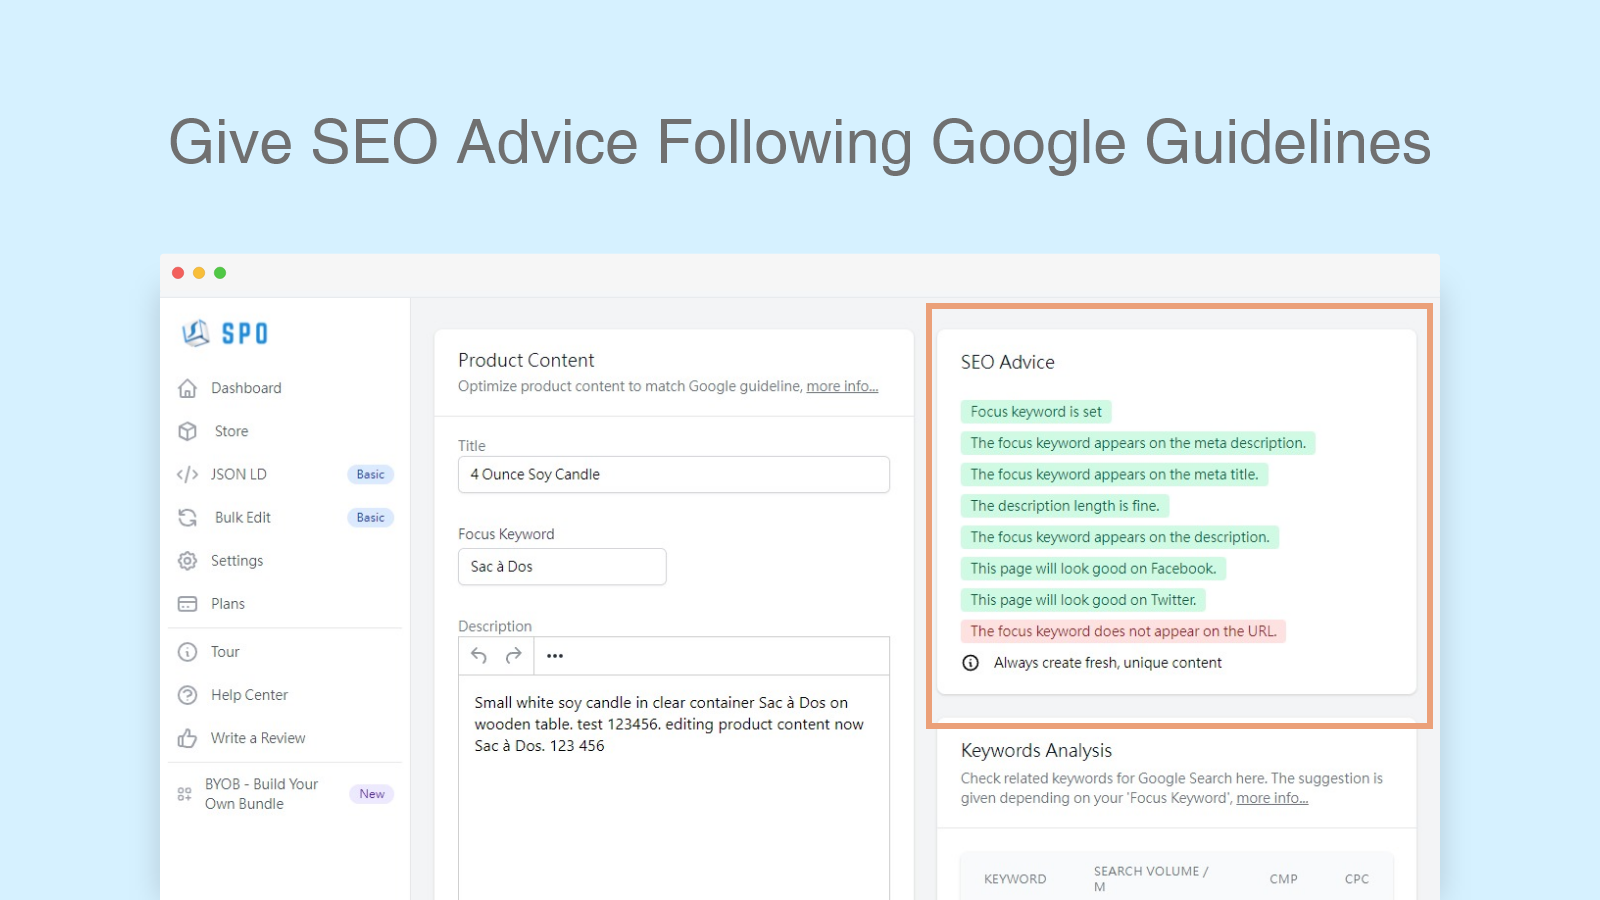 Geben Sie SEO-Ratschläge gemäß den Google-Richtlinien